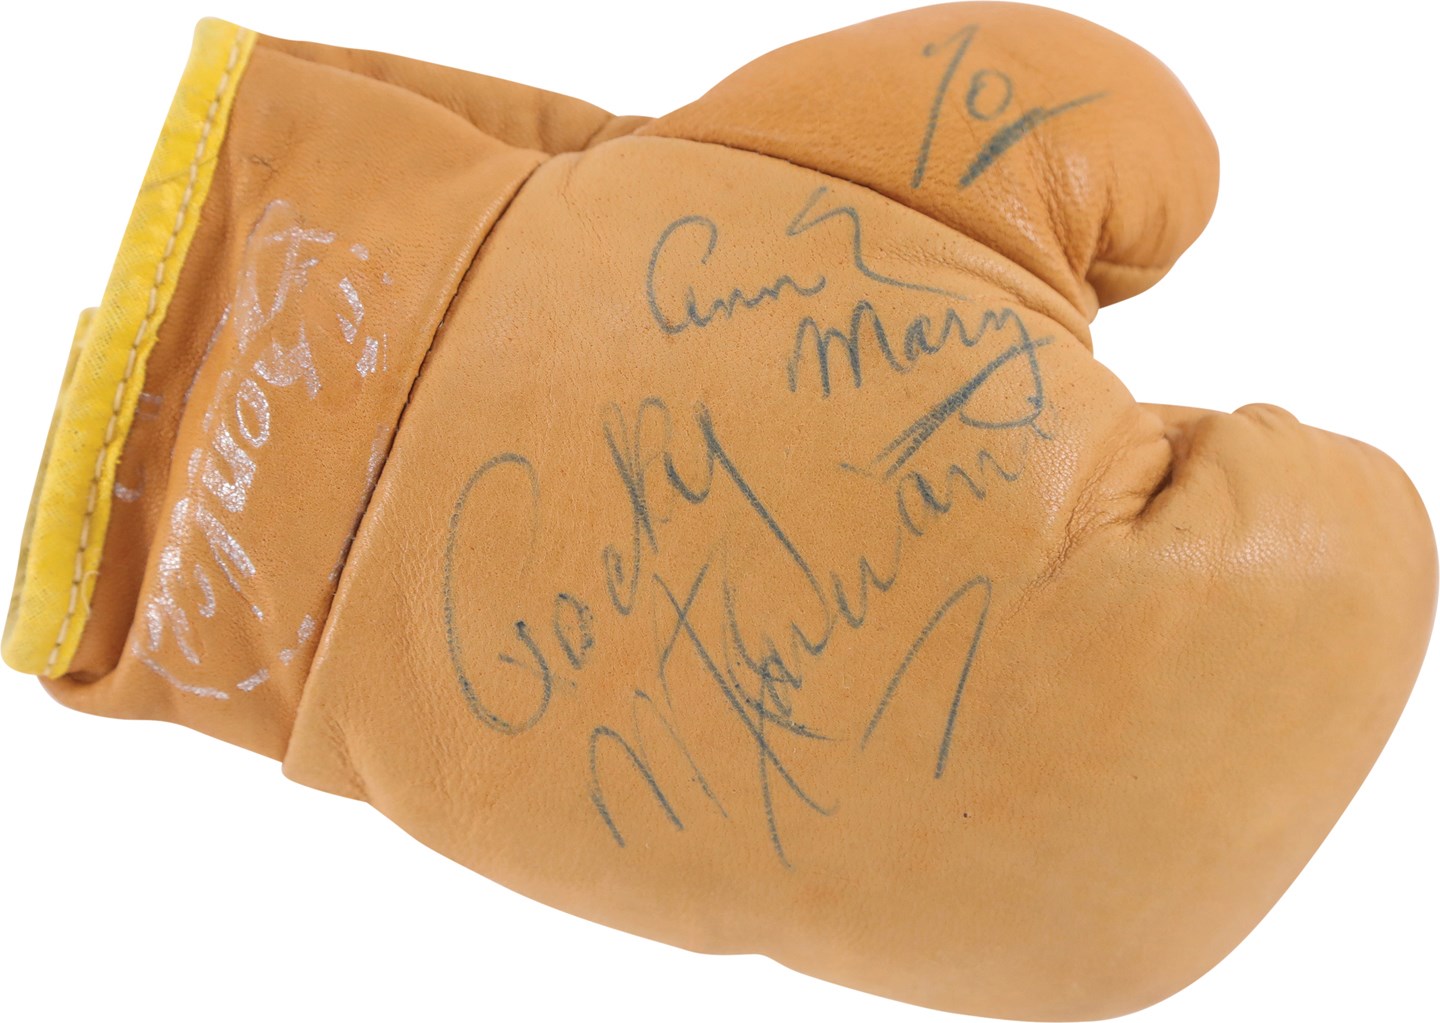 - Rocky Marciano Single-Signed Boxing Glove (PSA & JSA)